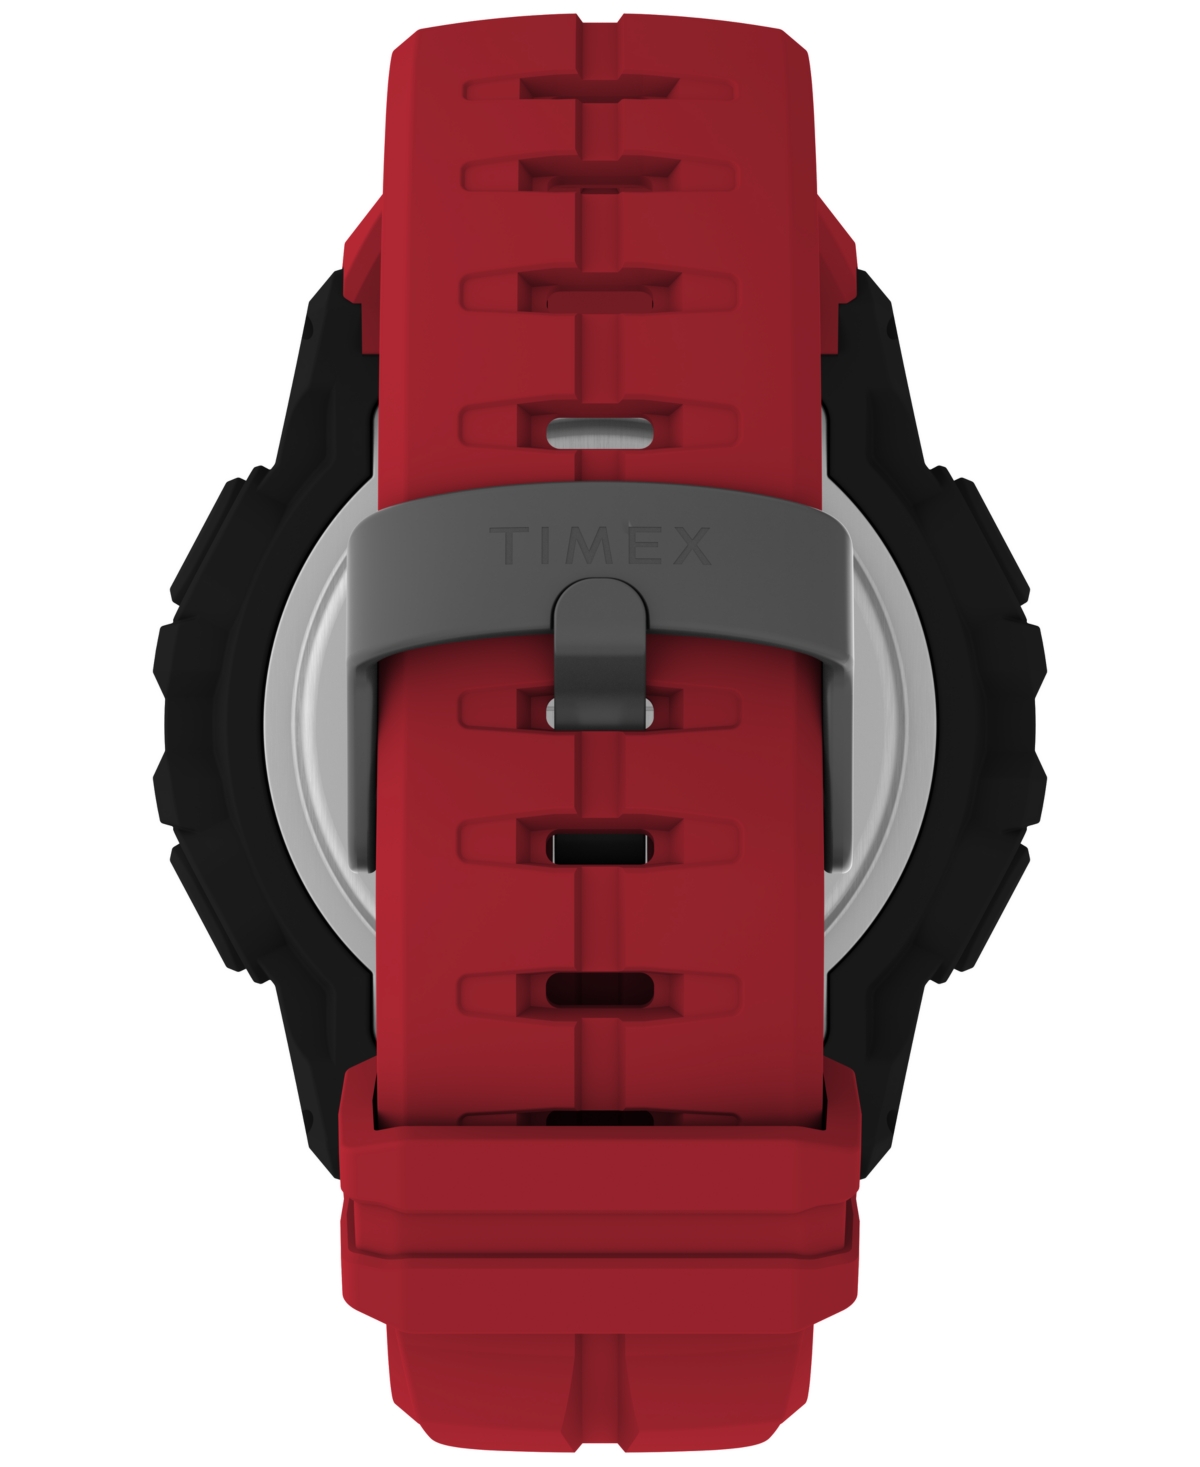 Shop Timex Men's Ufc Rush Digital Red Polyurethane Strap 52mm Round Watch